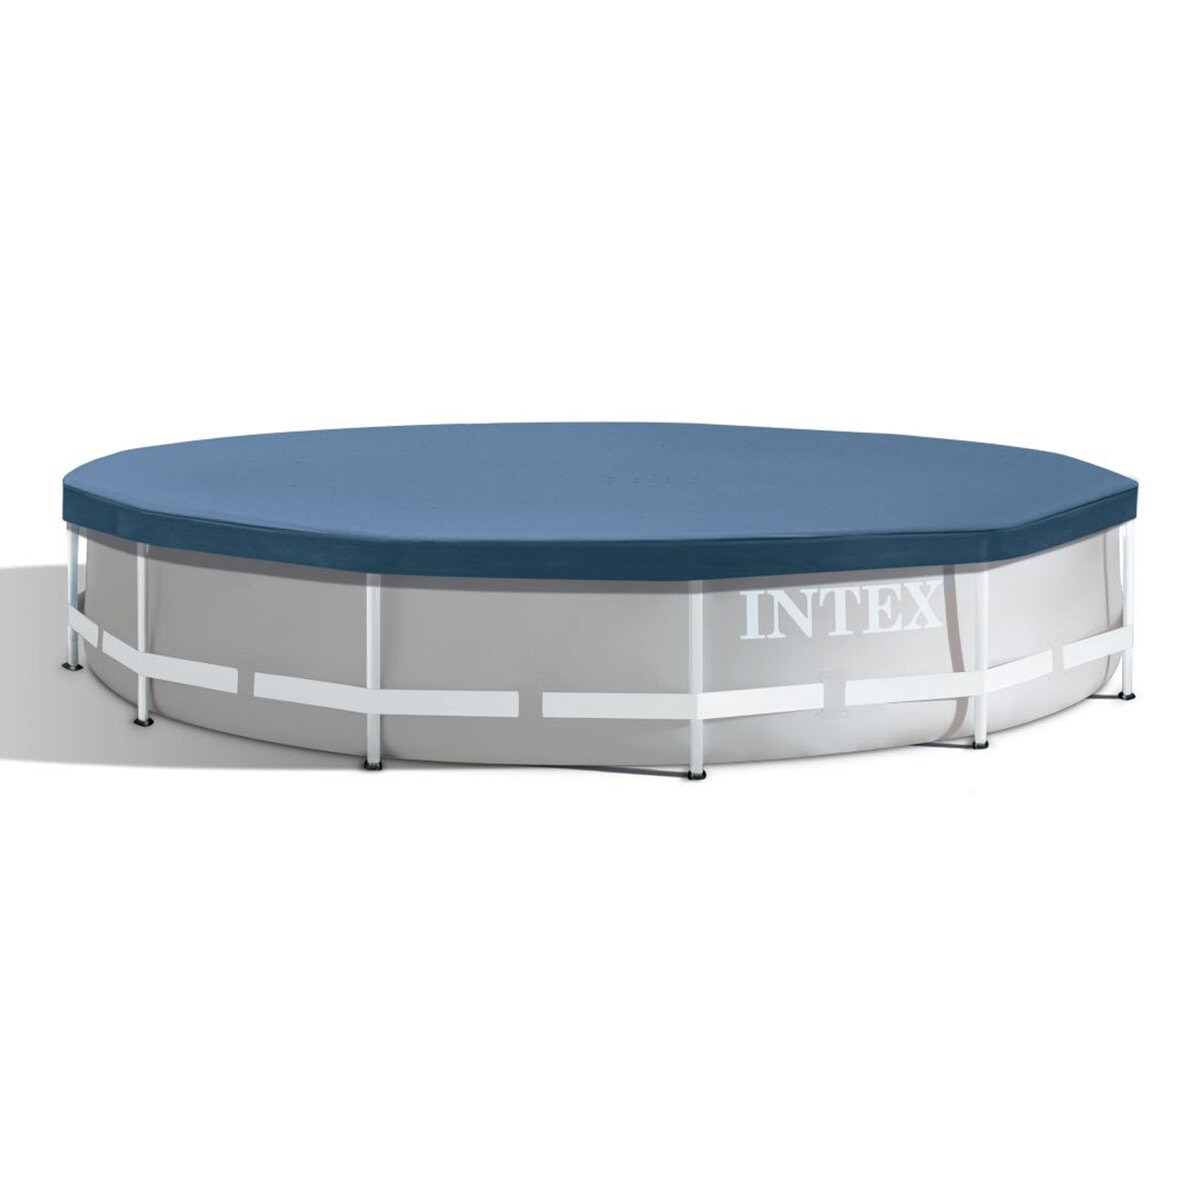 Intex 金屬支架圓形泳池